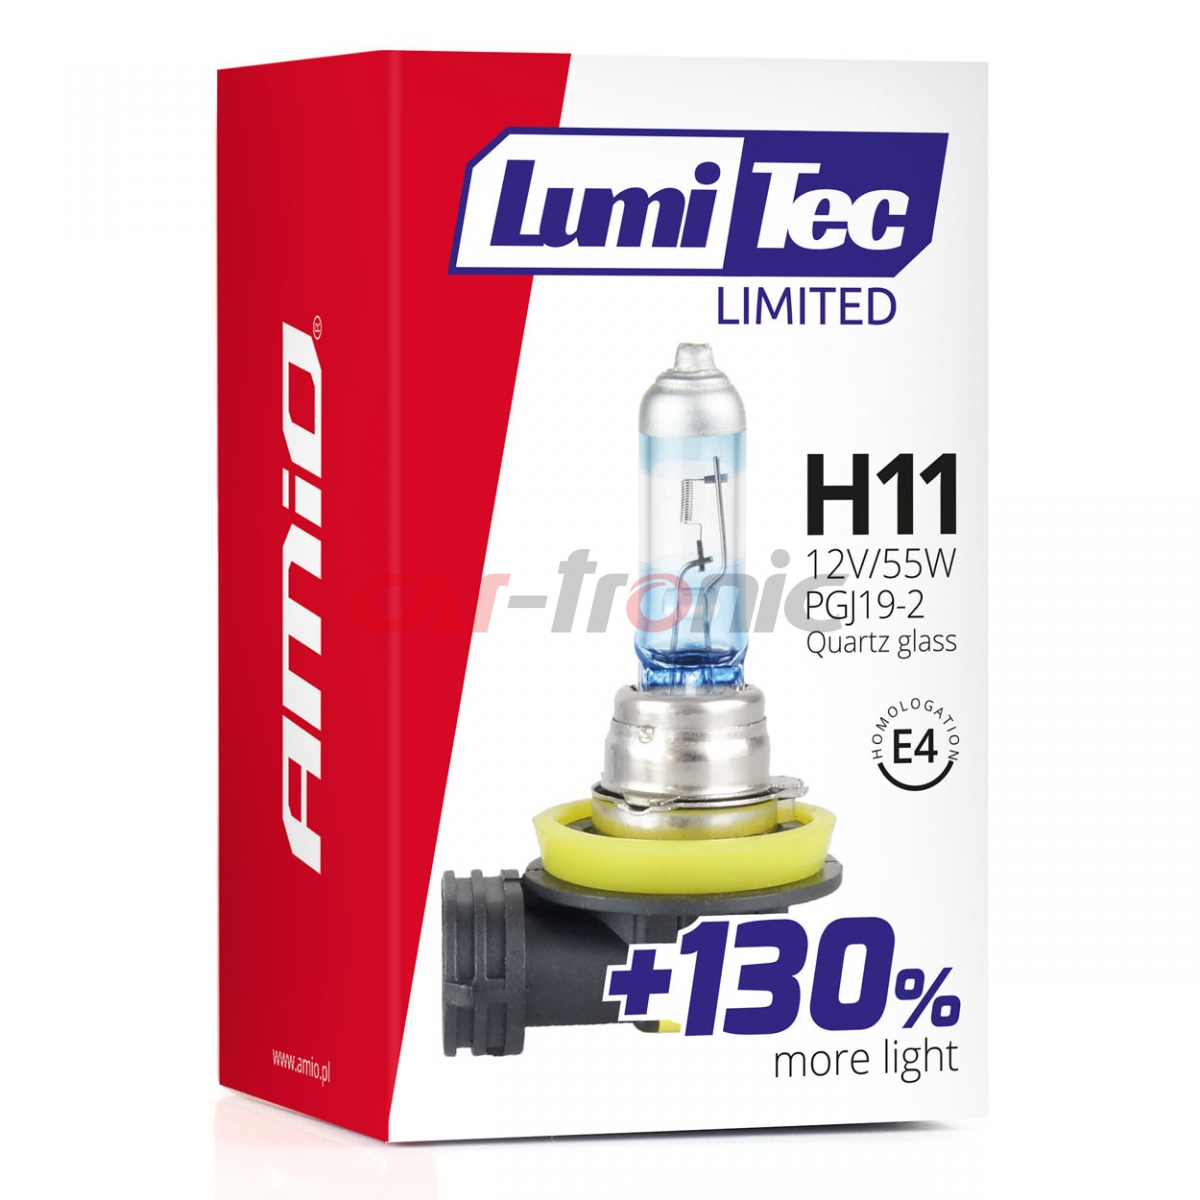 Żarówka halogenowa H11 12V 55W LumiTec LIMITED +130% AMIO-02134